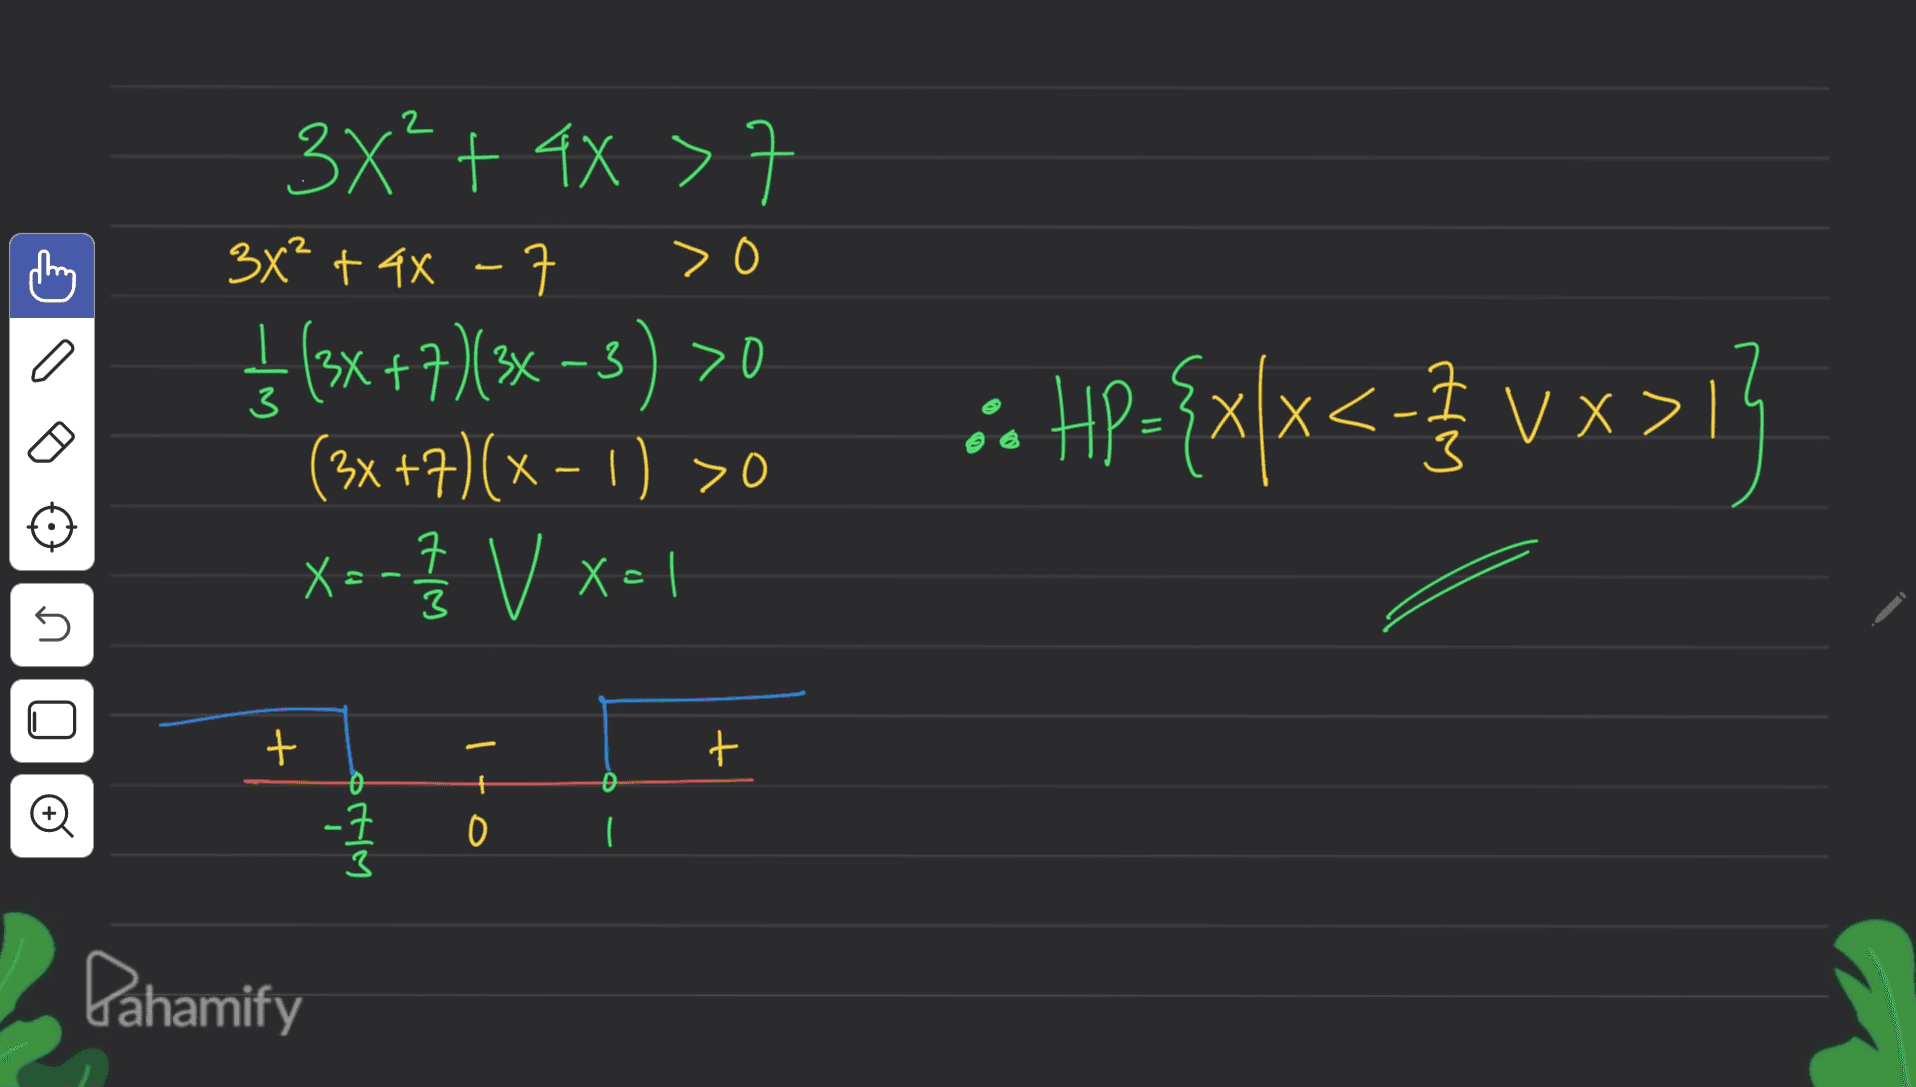 > 0 3x² + 4x 3x² + 4x - ₂ (3x + 7) (3x - 3) >0 (3x +7)(x - 1) >0 X=- Ž V x=1 V 3 :: 42-{x}x<- VX1 HI ㅋ 3 n + + 0 0 크 o + HIM Pahamify 